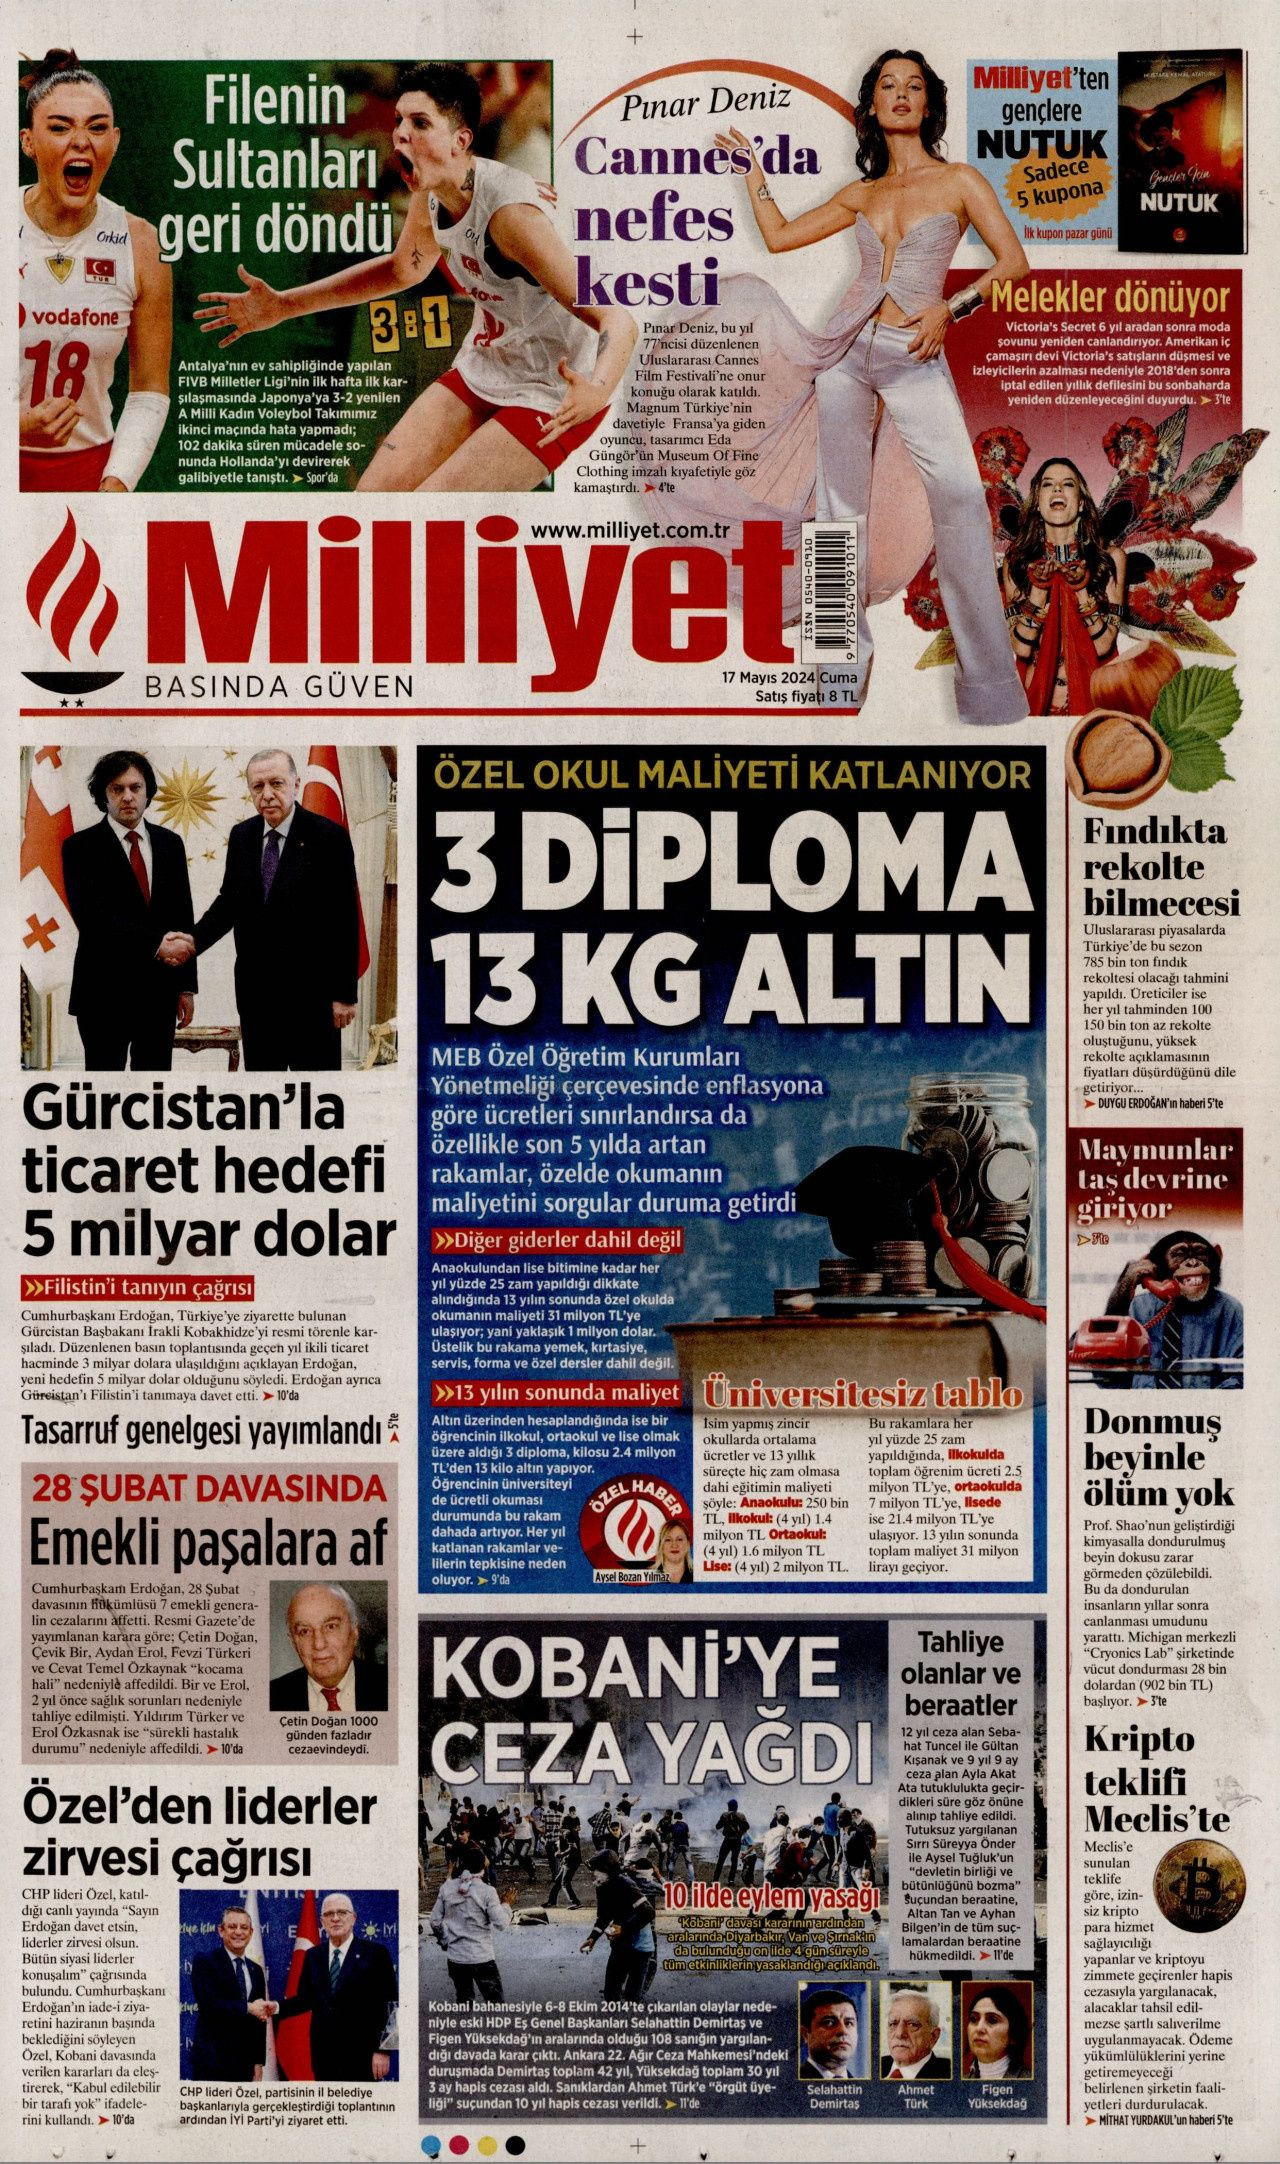 Gazeteler Kobanê davası kararlarını nasıl ve nereden gördü? - Sayfa 2